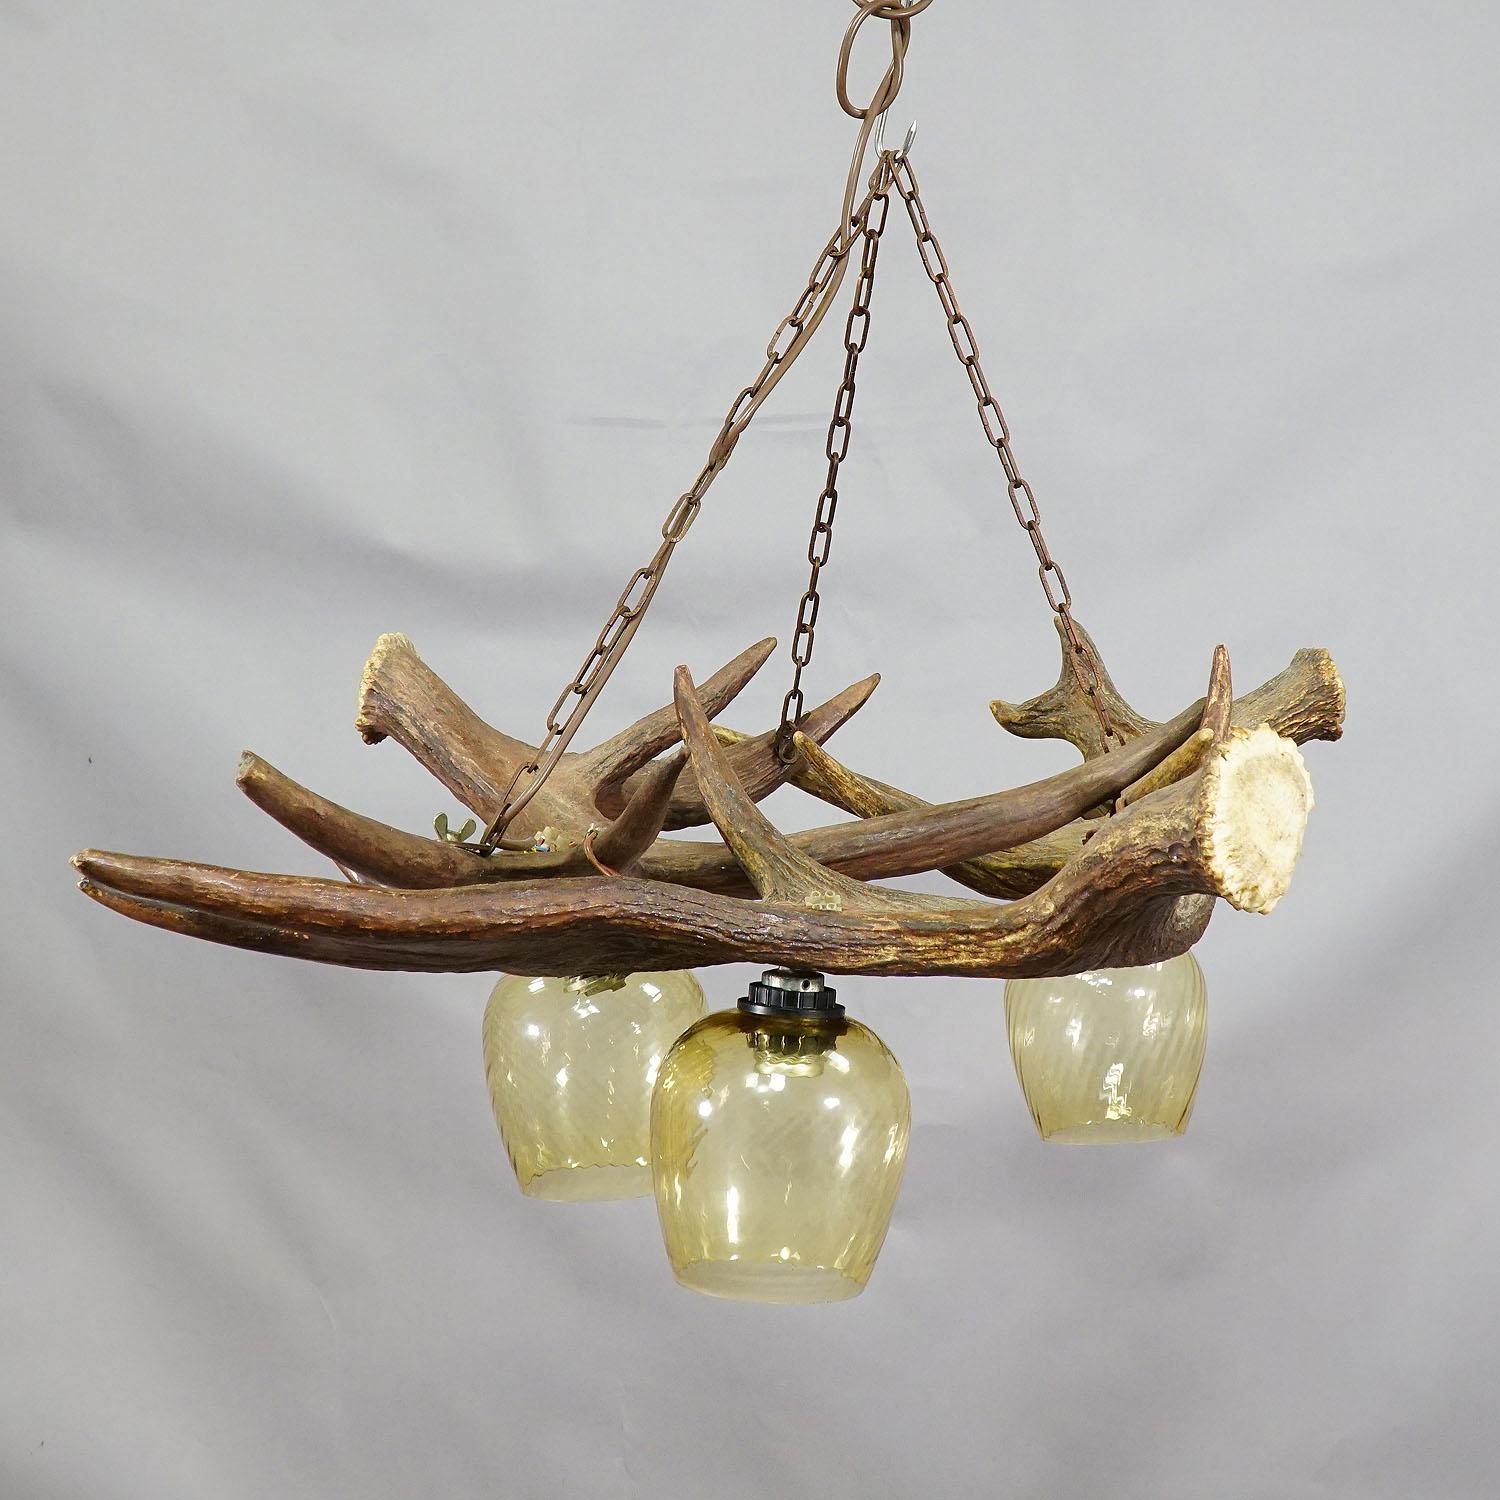 German Rustic Antler Lamp with Elk Antlers For Sale